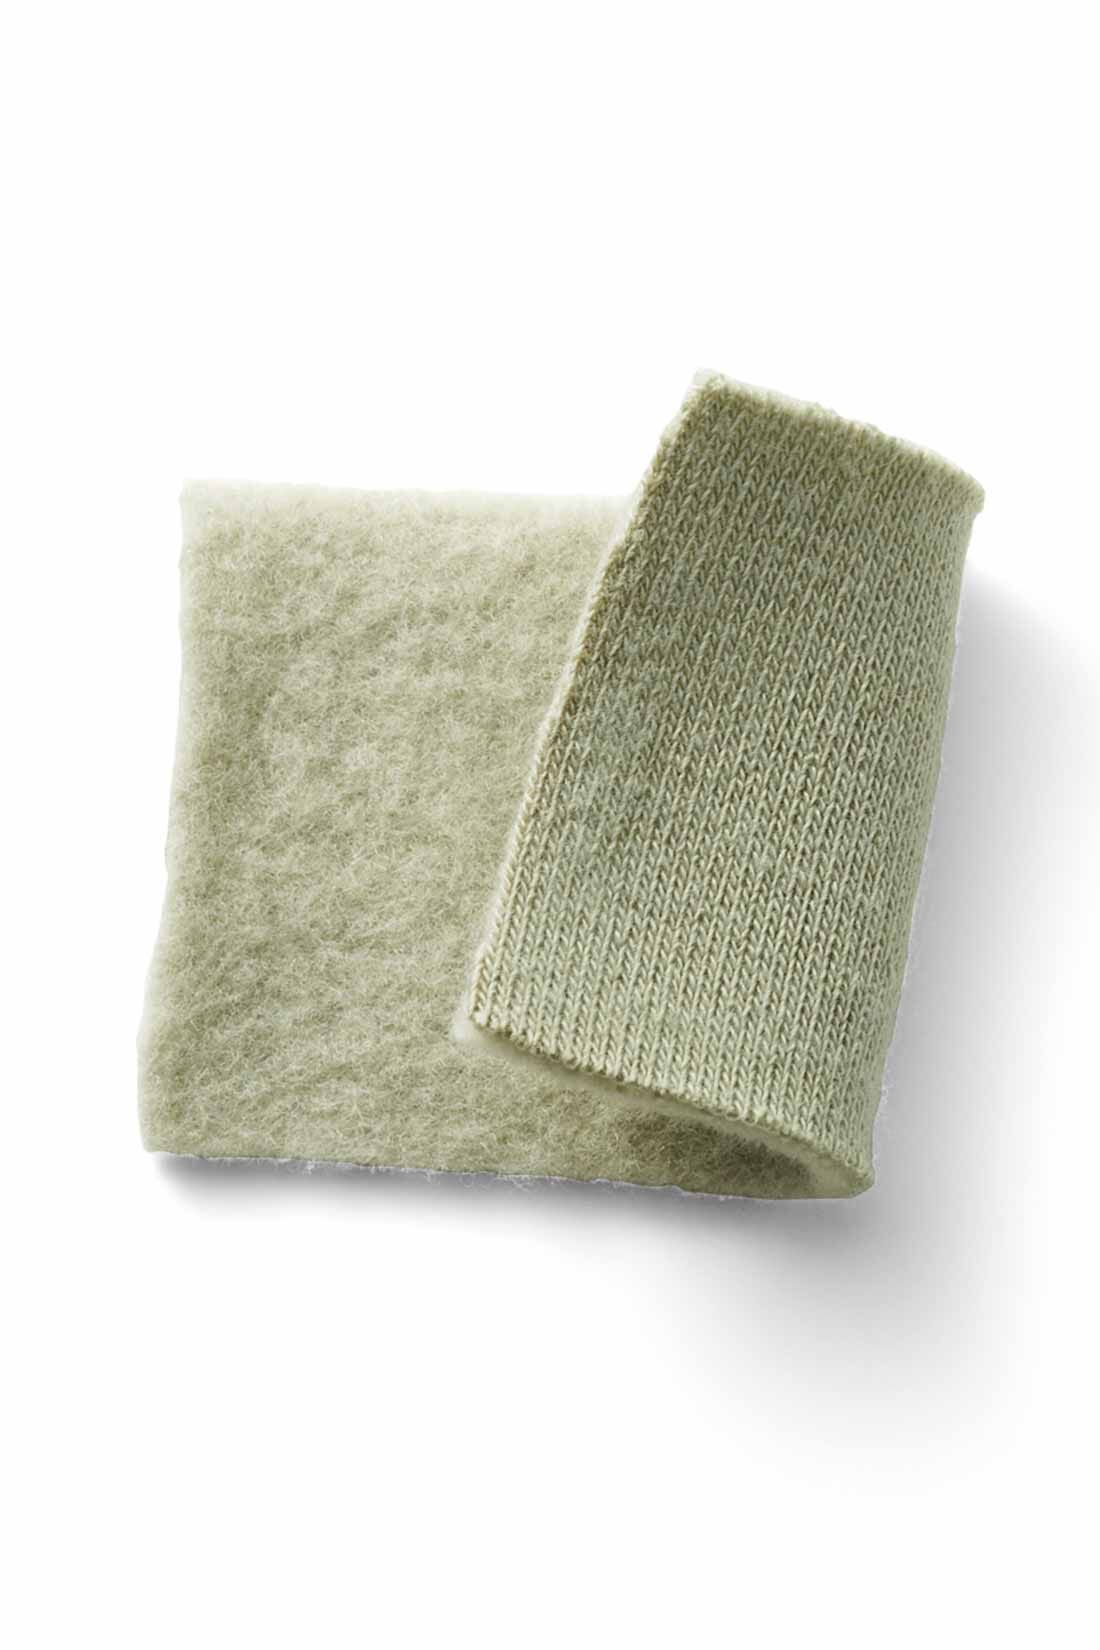 DRECO by IEDIT|【3～10日でお届け】IEDIT[イディット]　裏起毛スウェット素材の大人きれいめロング丈ワンピース〈ライトカーキ〉|肌を暖かく包み込む、伸びやかな綿混の裏起毛カットソー。